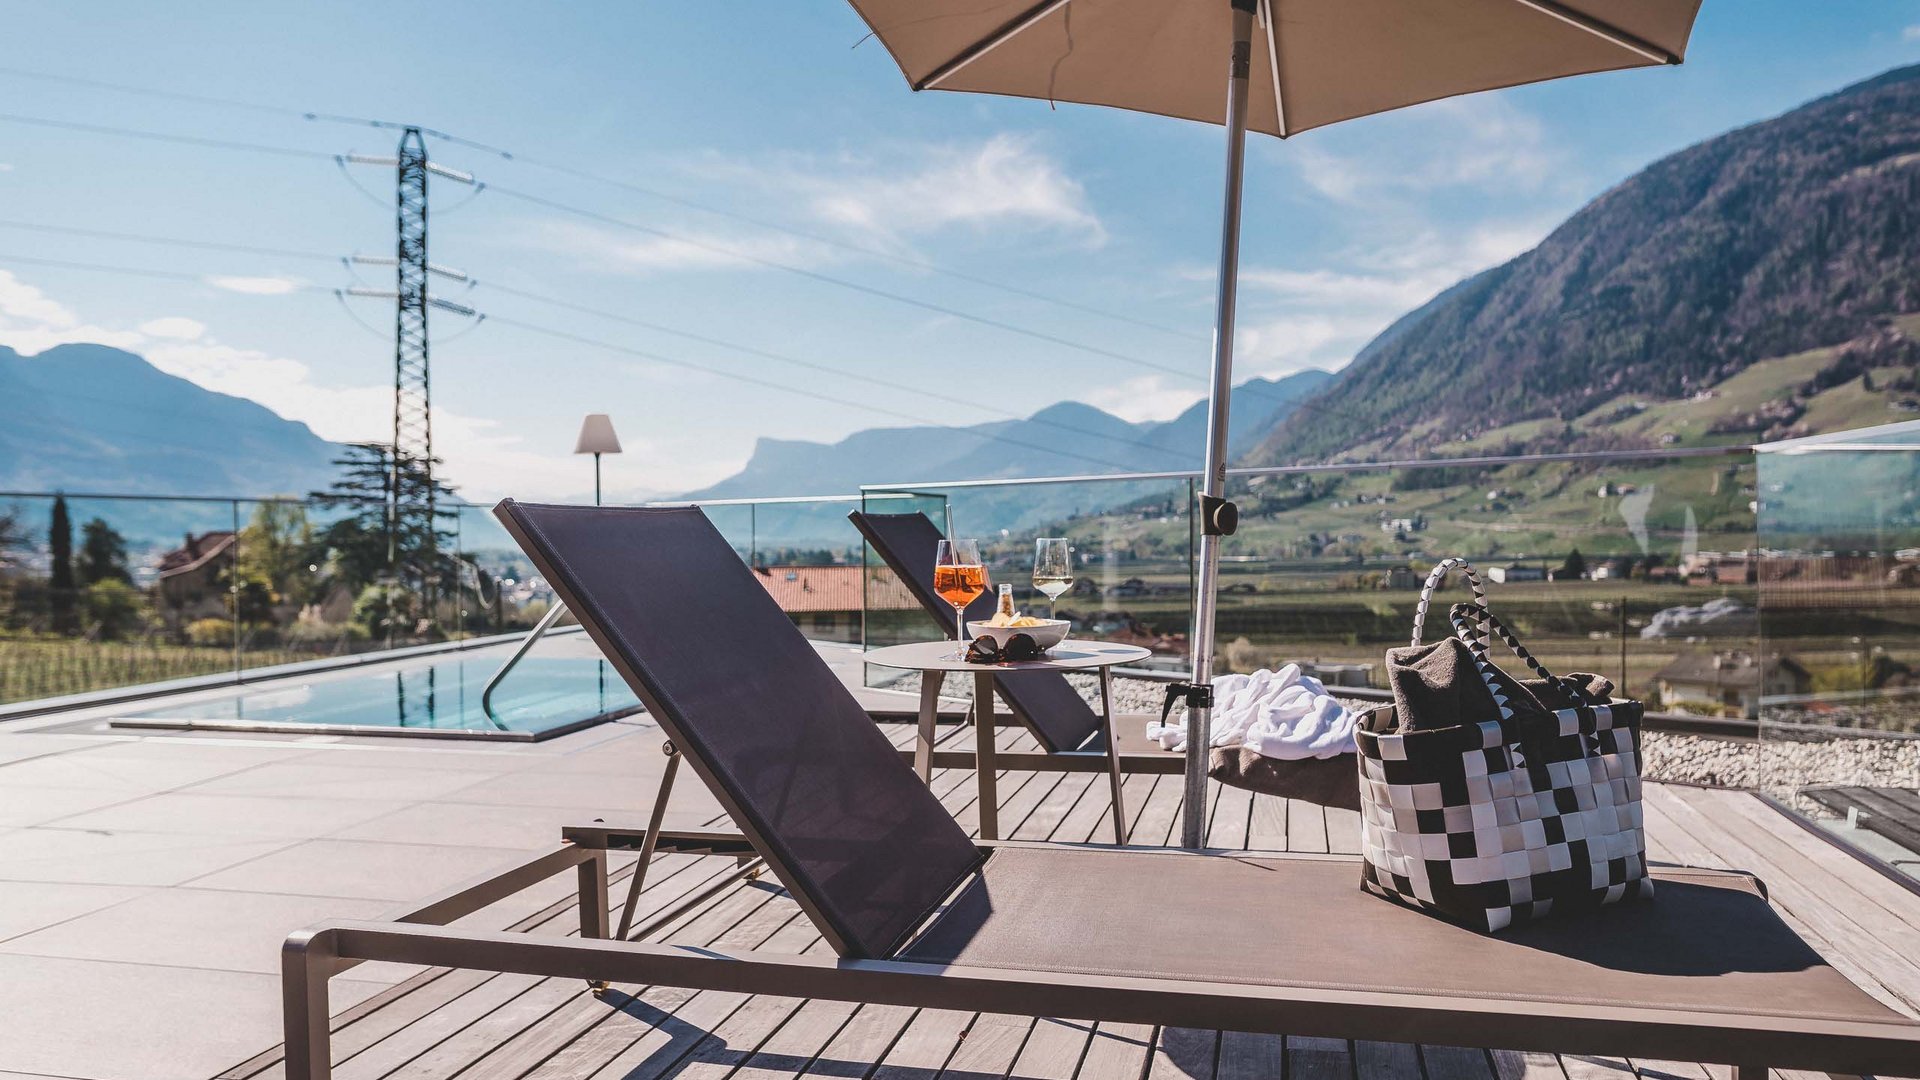 Cercate un hotel in Alto Adige con piscina panoramica?